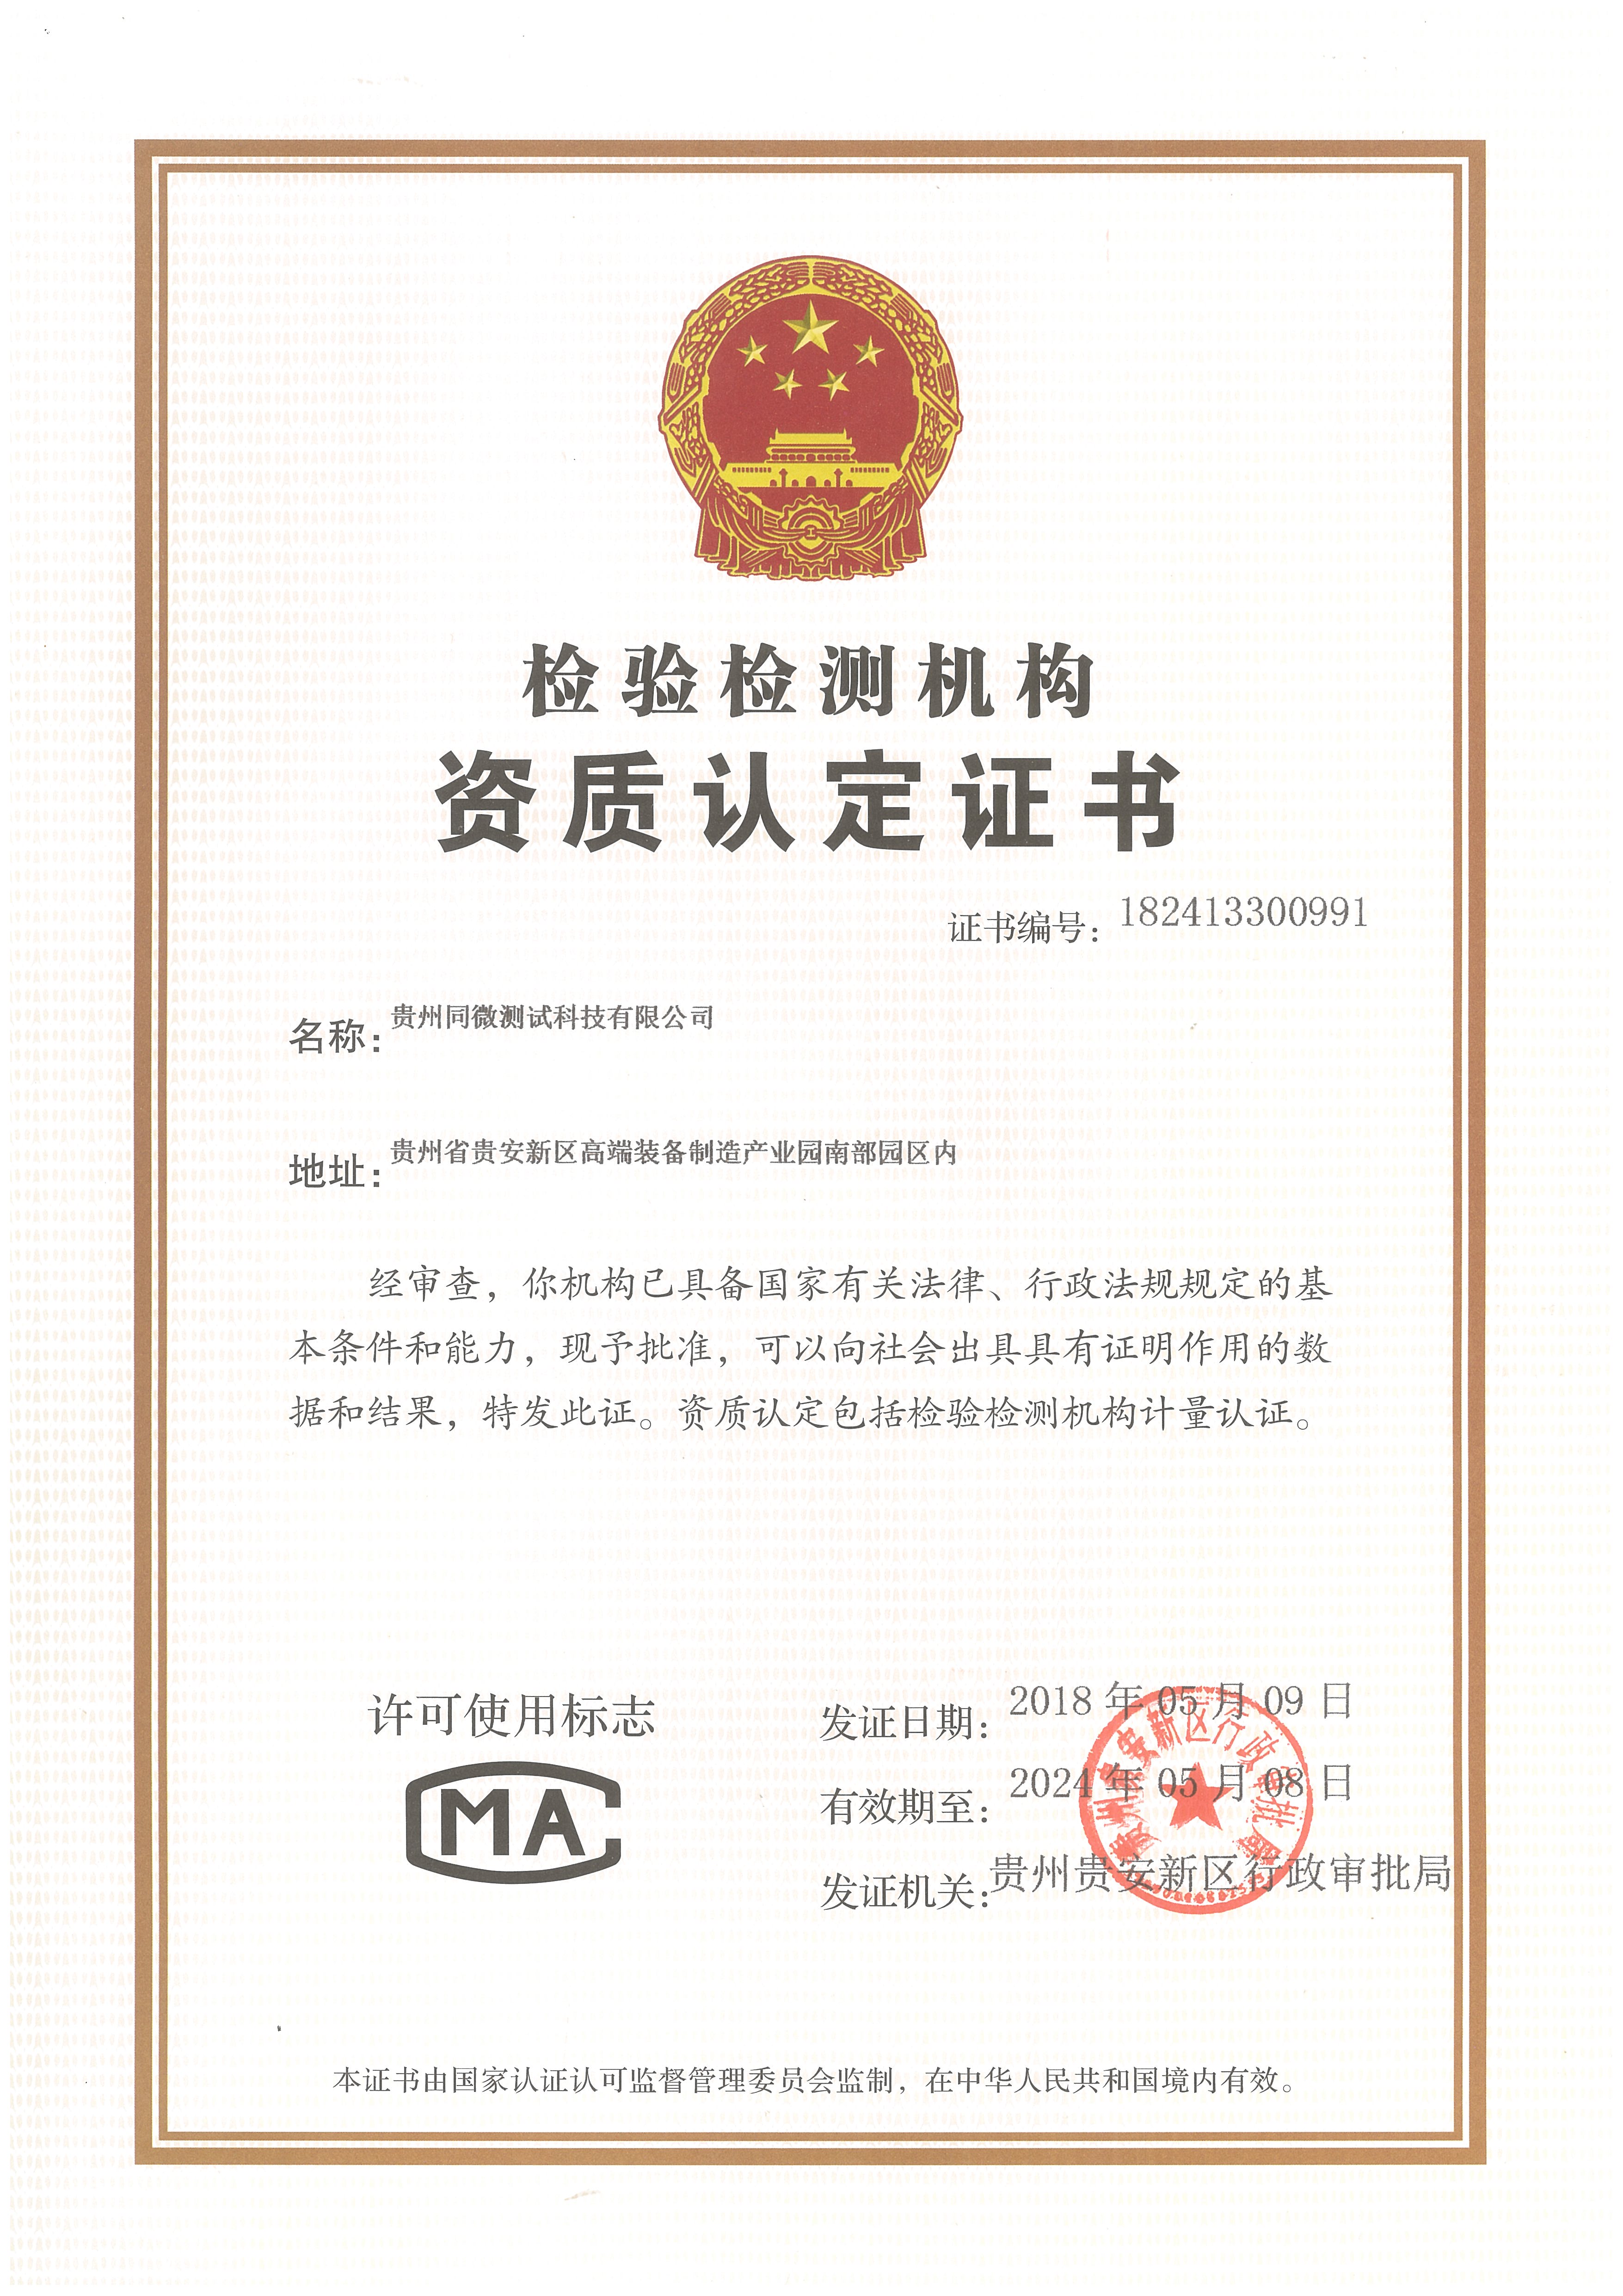 2018年5月9日贵州同微测试科技有限公司获得CMA资质证书